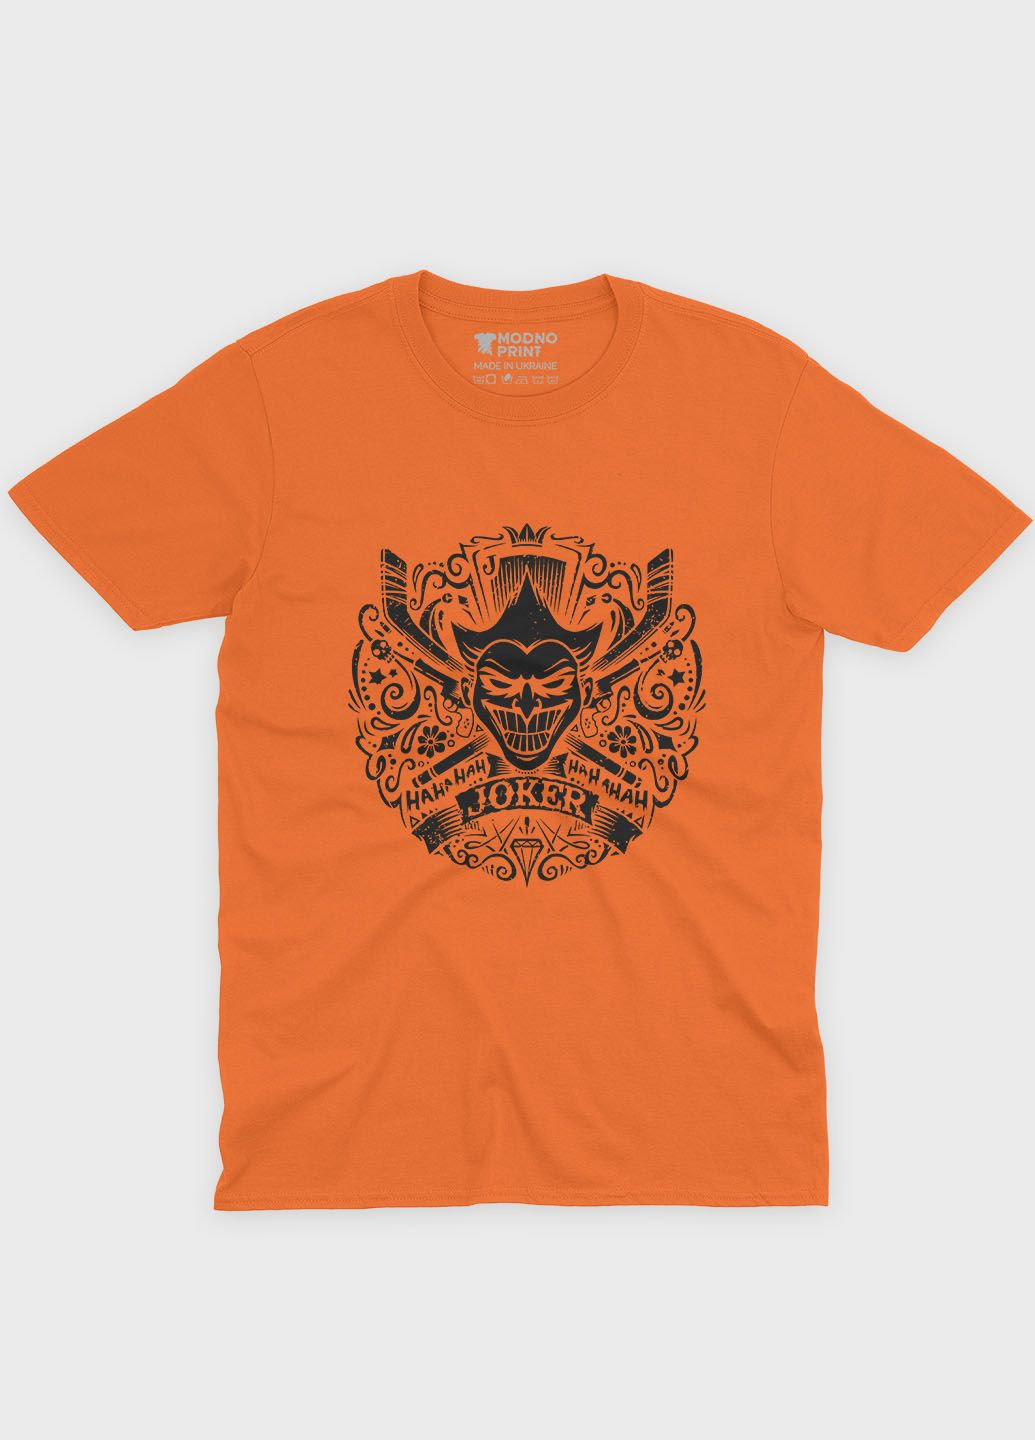 Помаранчева демісезонна футболка для хлопчика з принтом суперзлодія - джокер (ts001-1-ora-006-005-025-b) Modno